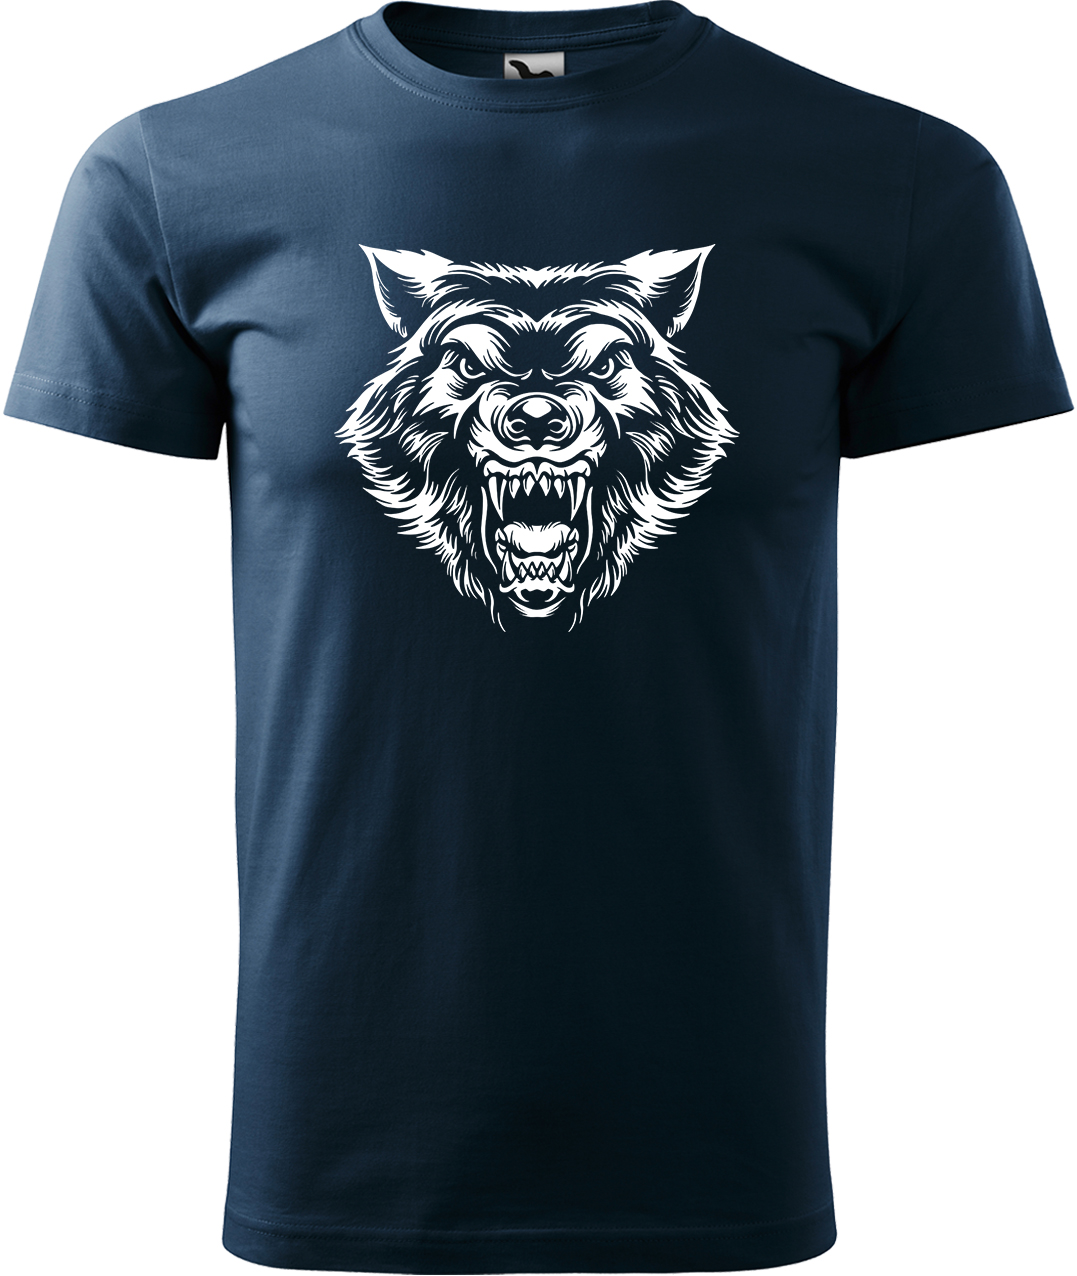 Pánské tričko s vlkem - Rozzuřený vlk Velikost: XL, Barva: Námořní modrá (02), Střih: pánský